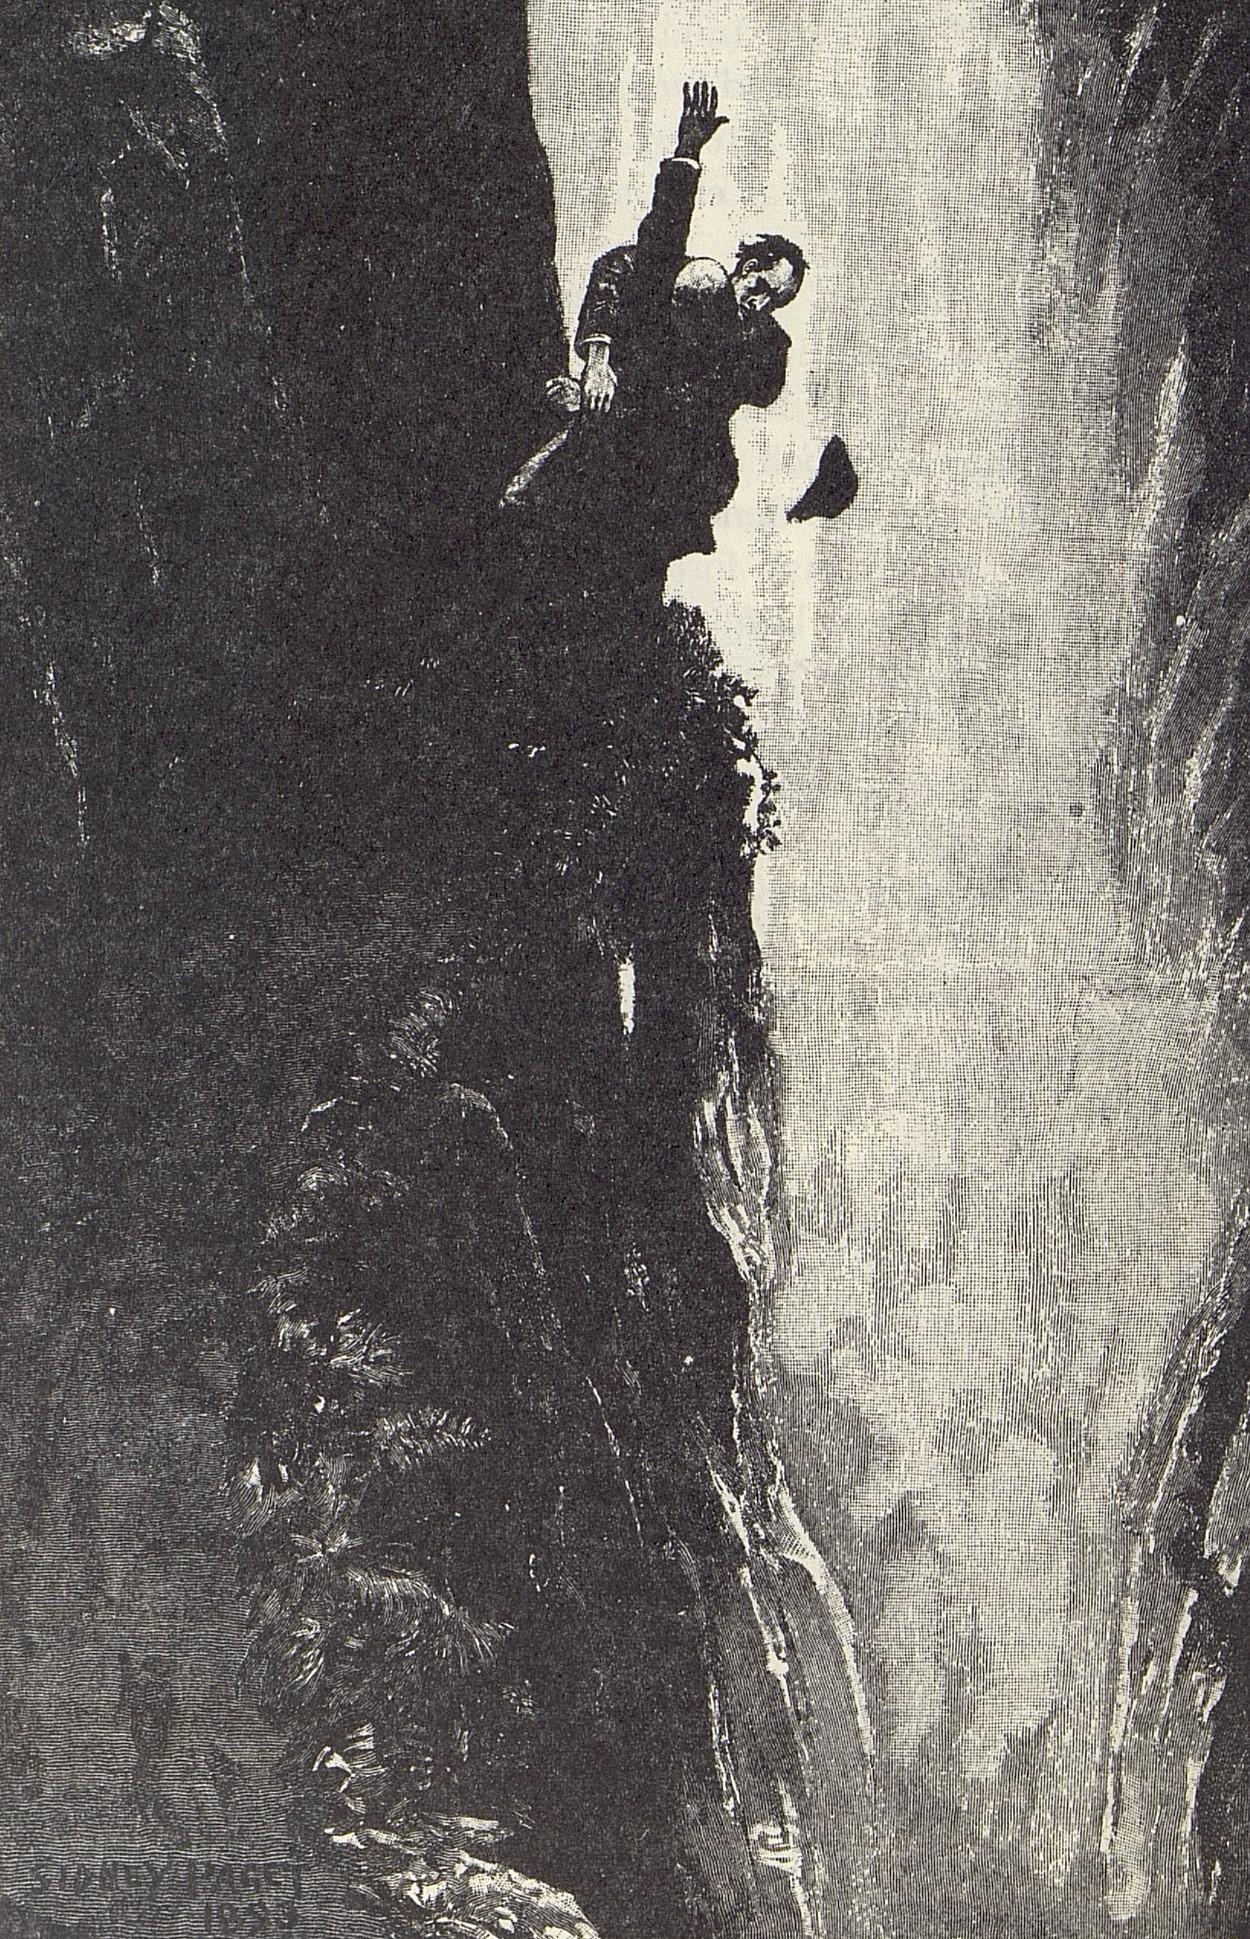 Två personer inbegripna i en kamp på liv och död vid Reichenbachfallen. Båda är just på väg att falla ner från klippavsatsen, fastklamrade vid varandra.